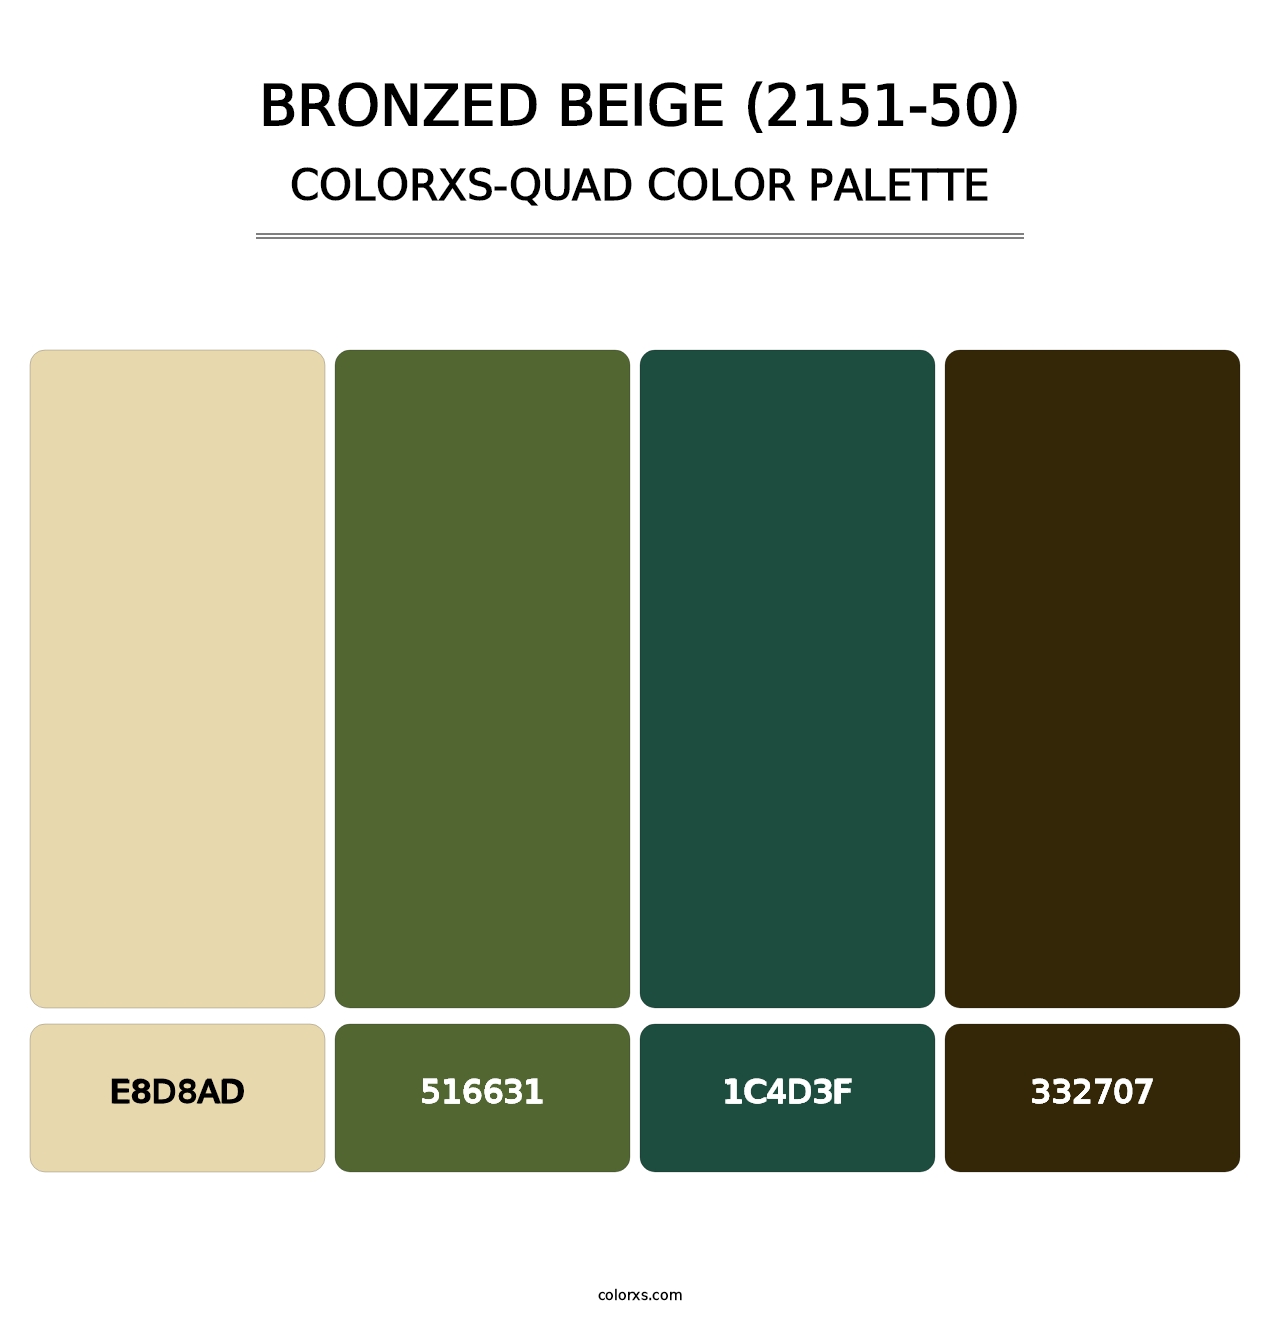 Bronzed Beige (2151-50) - Colorxs Quad Palette